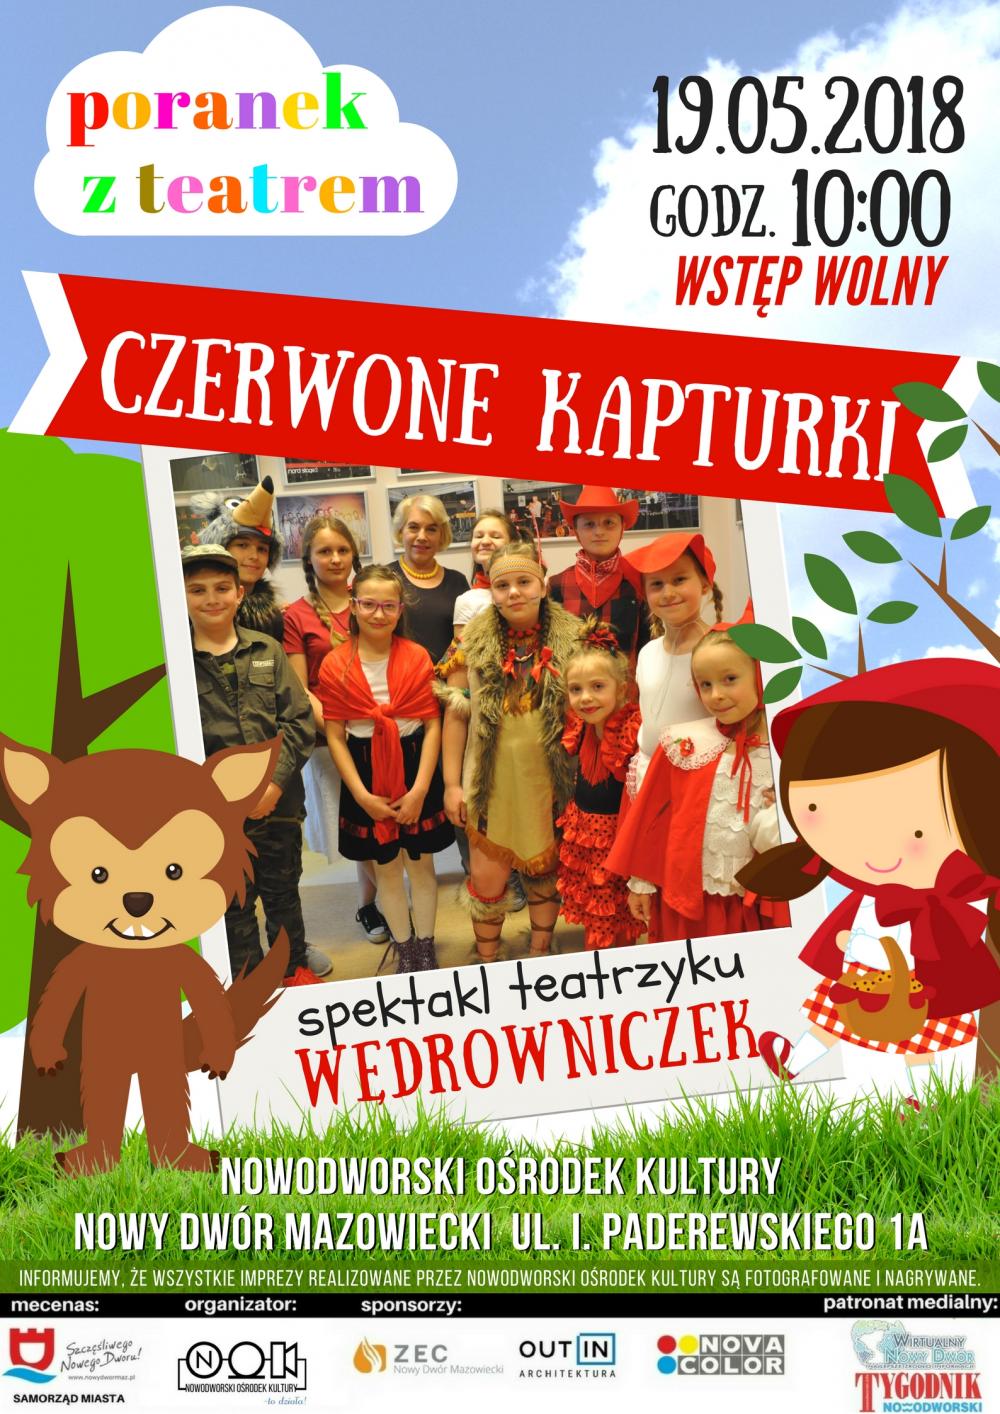 19.05.2018 r. godz. 10:00 w NOK-u "Poranek z teatrem" - spektakl Teatrzyku Wędrowniczek pt. "Czerwone Kapturki".